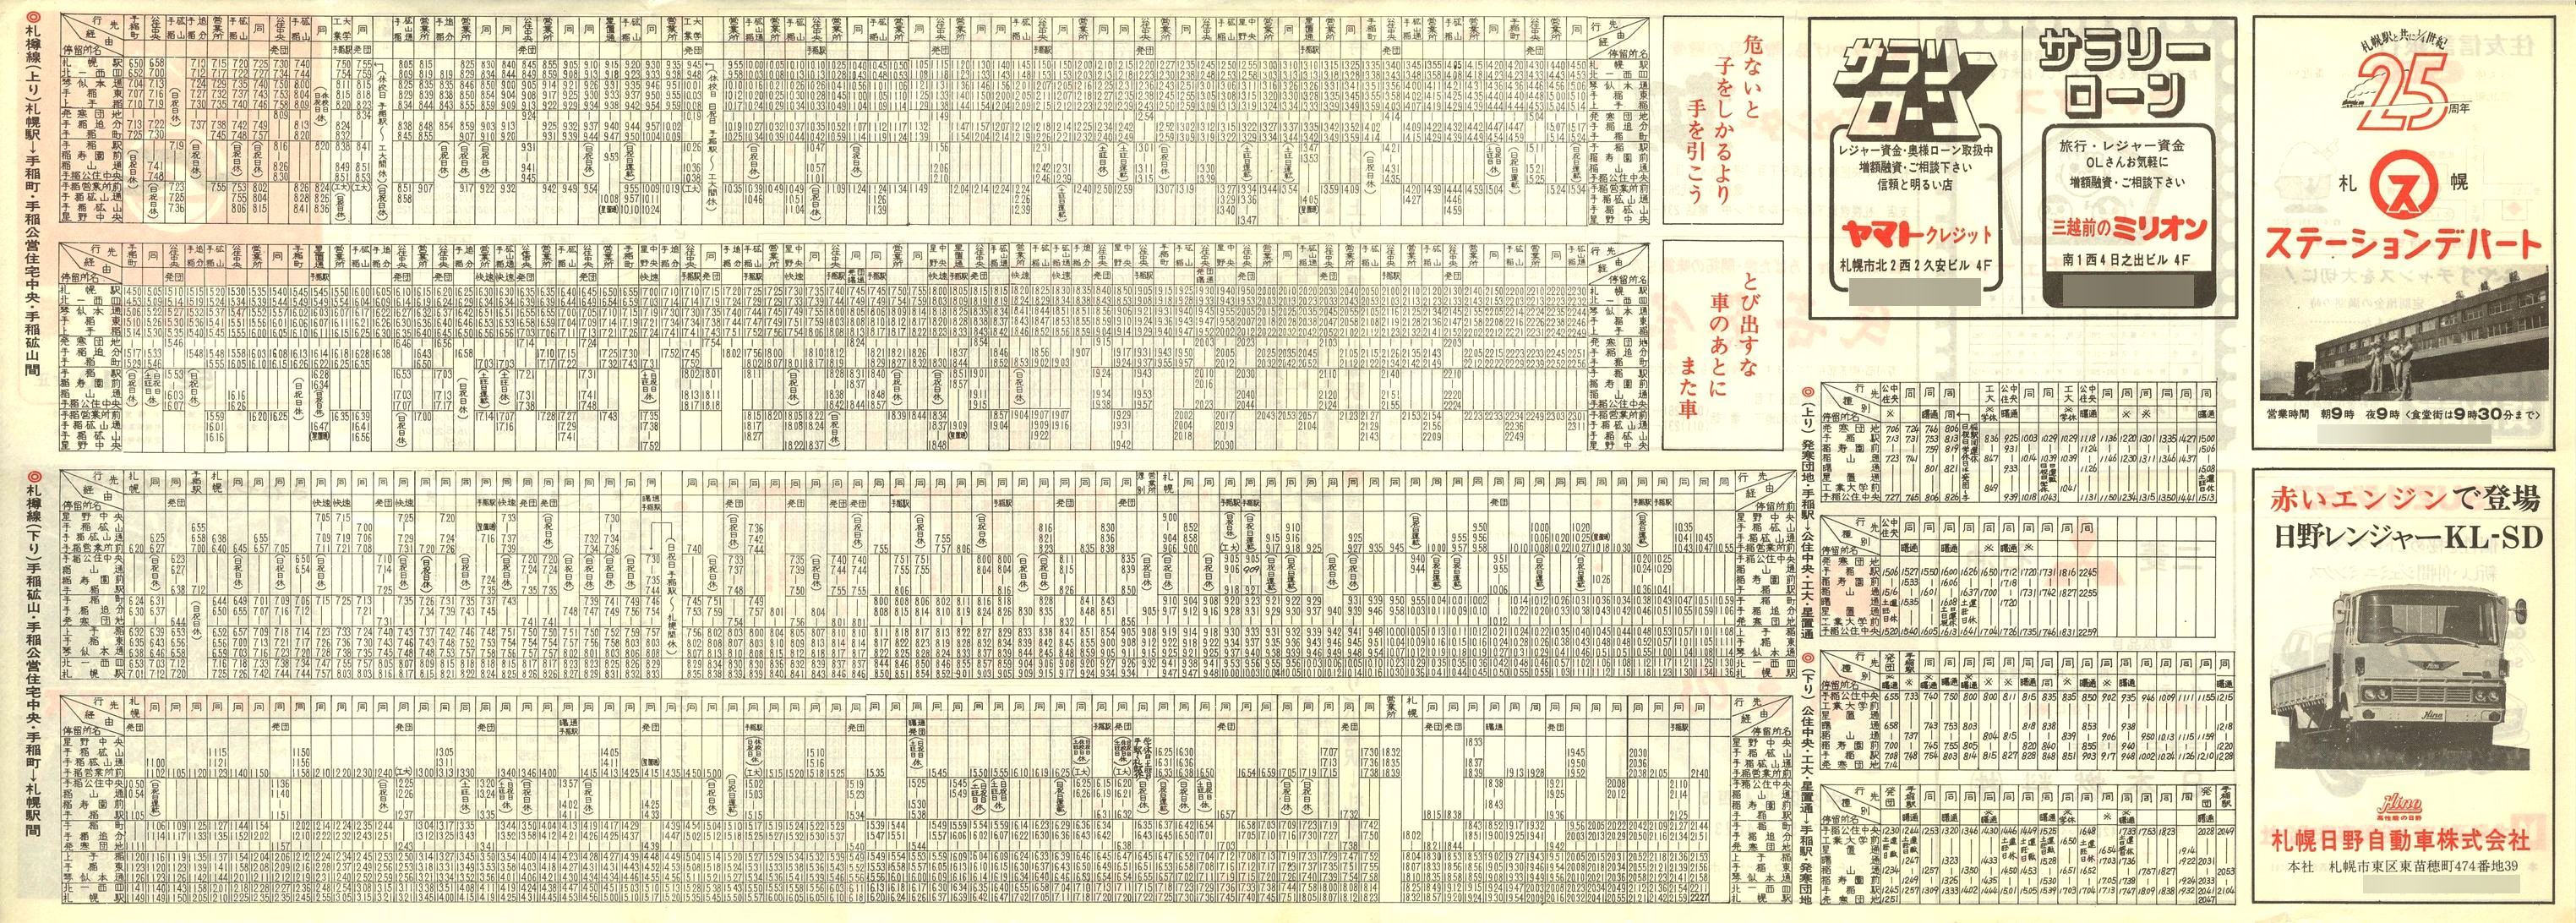 1977-05-10改正_国鉄バス_札樽線時刻表裏面